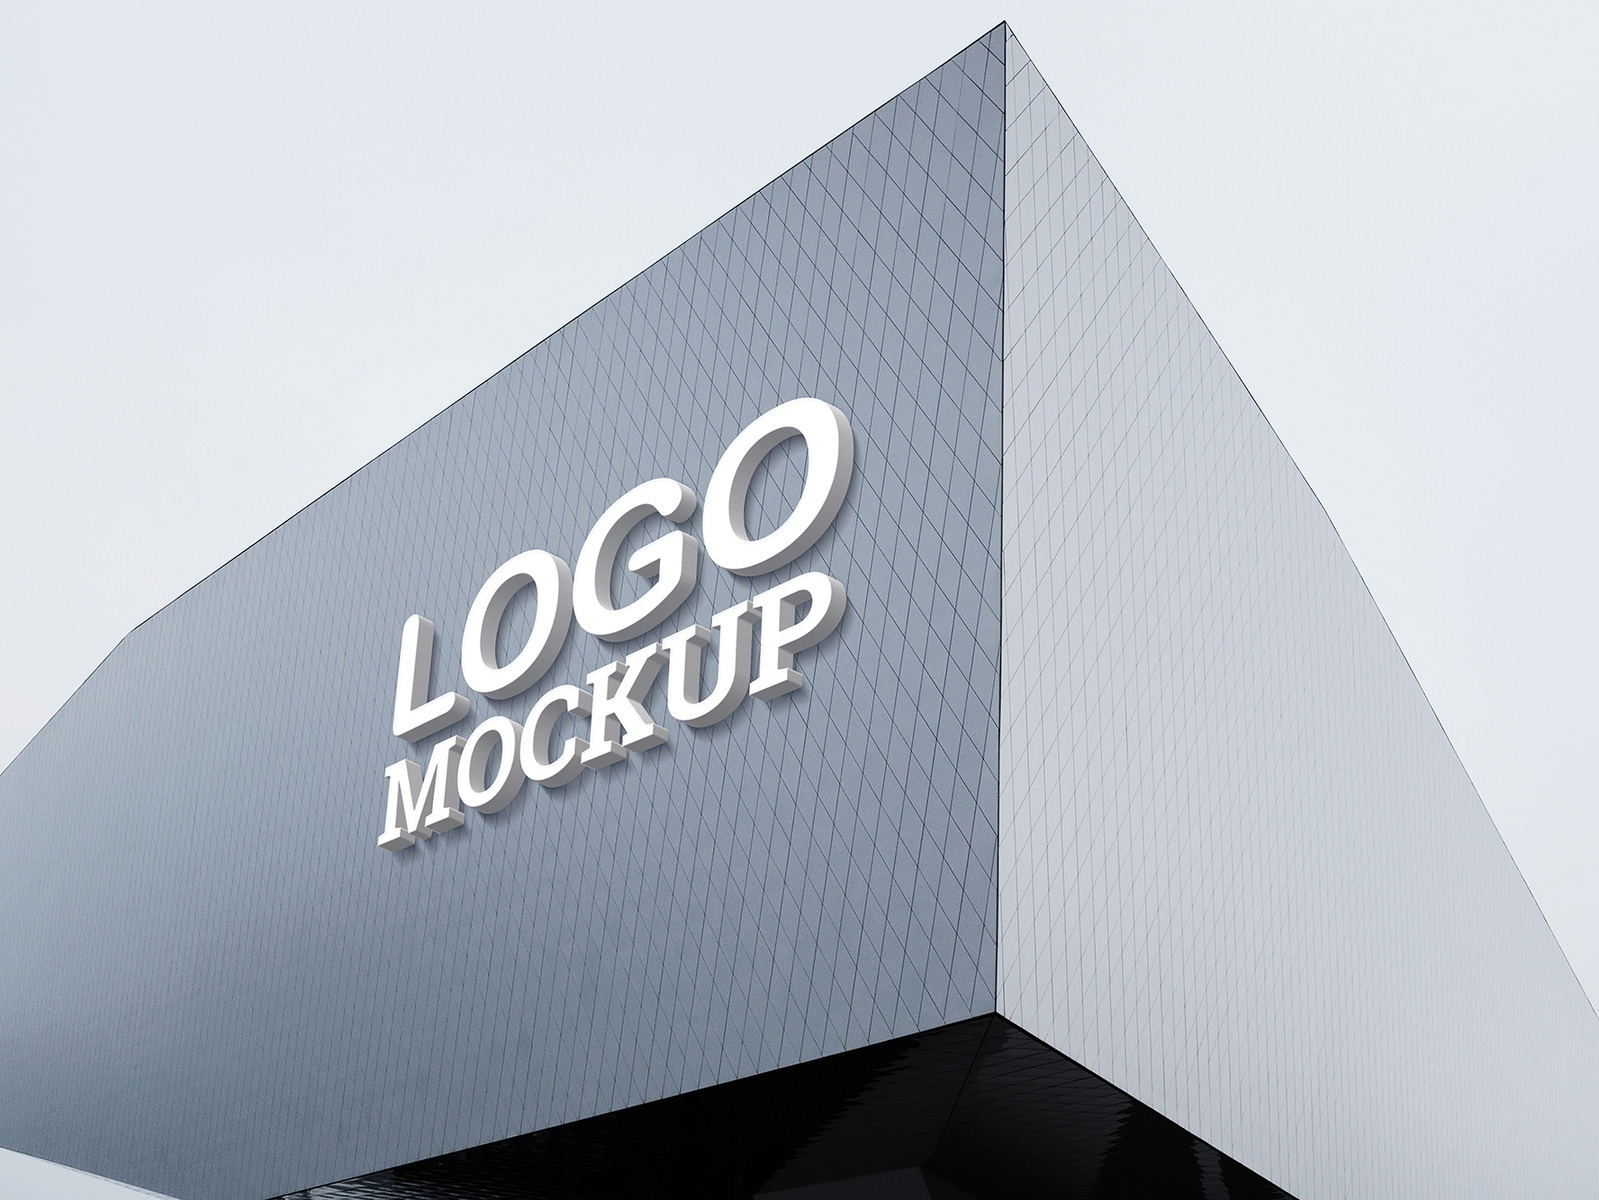 3d building logo sign mockup